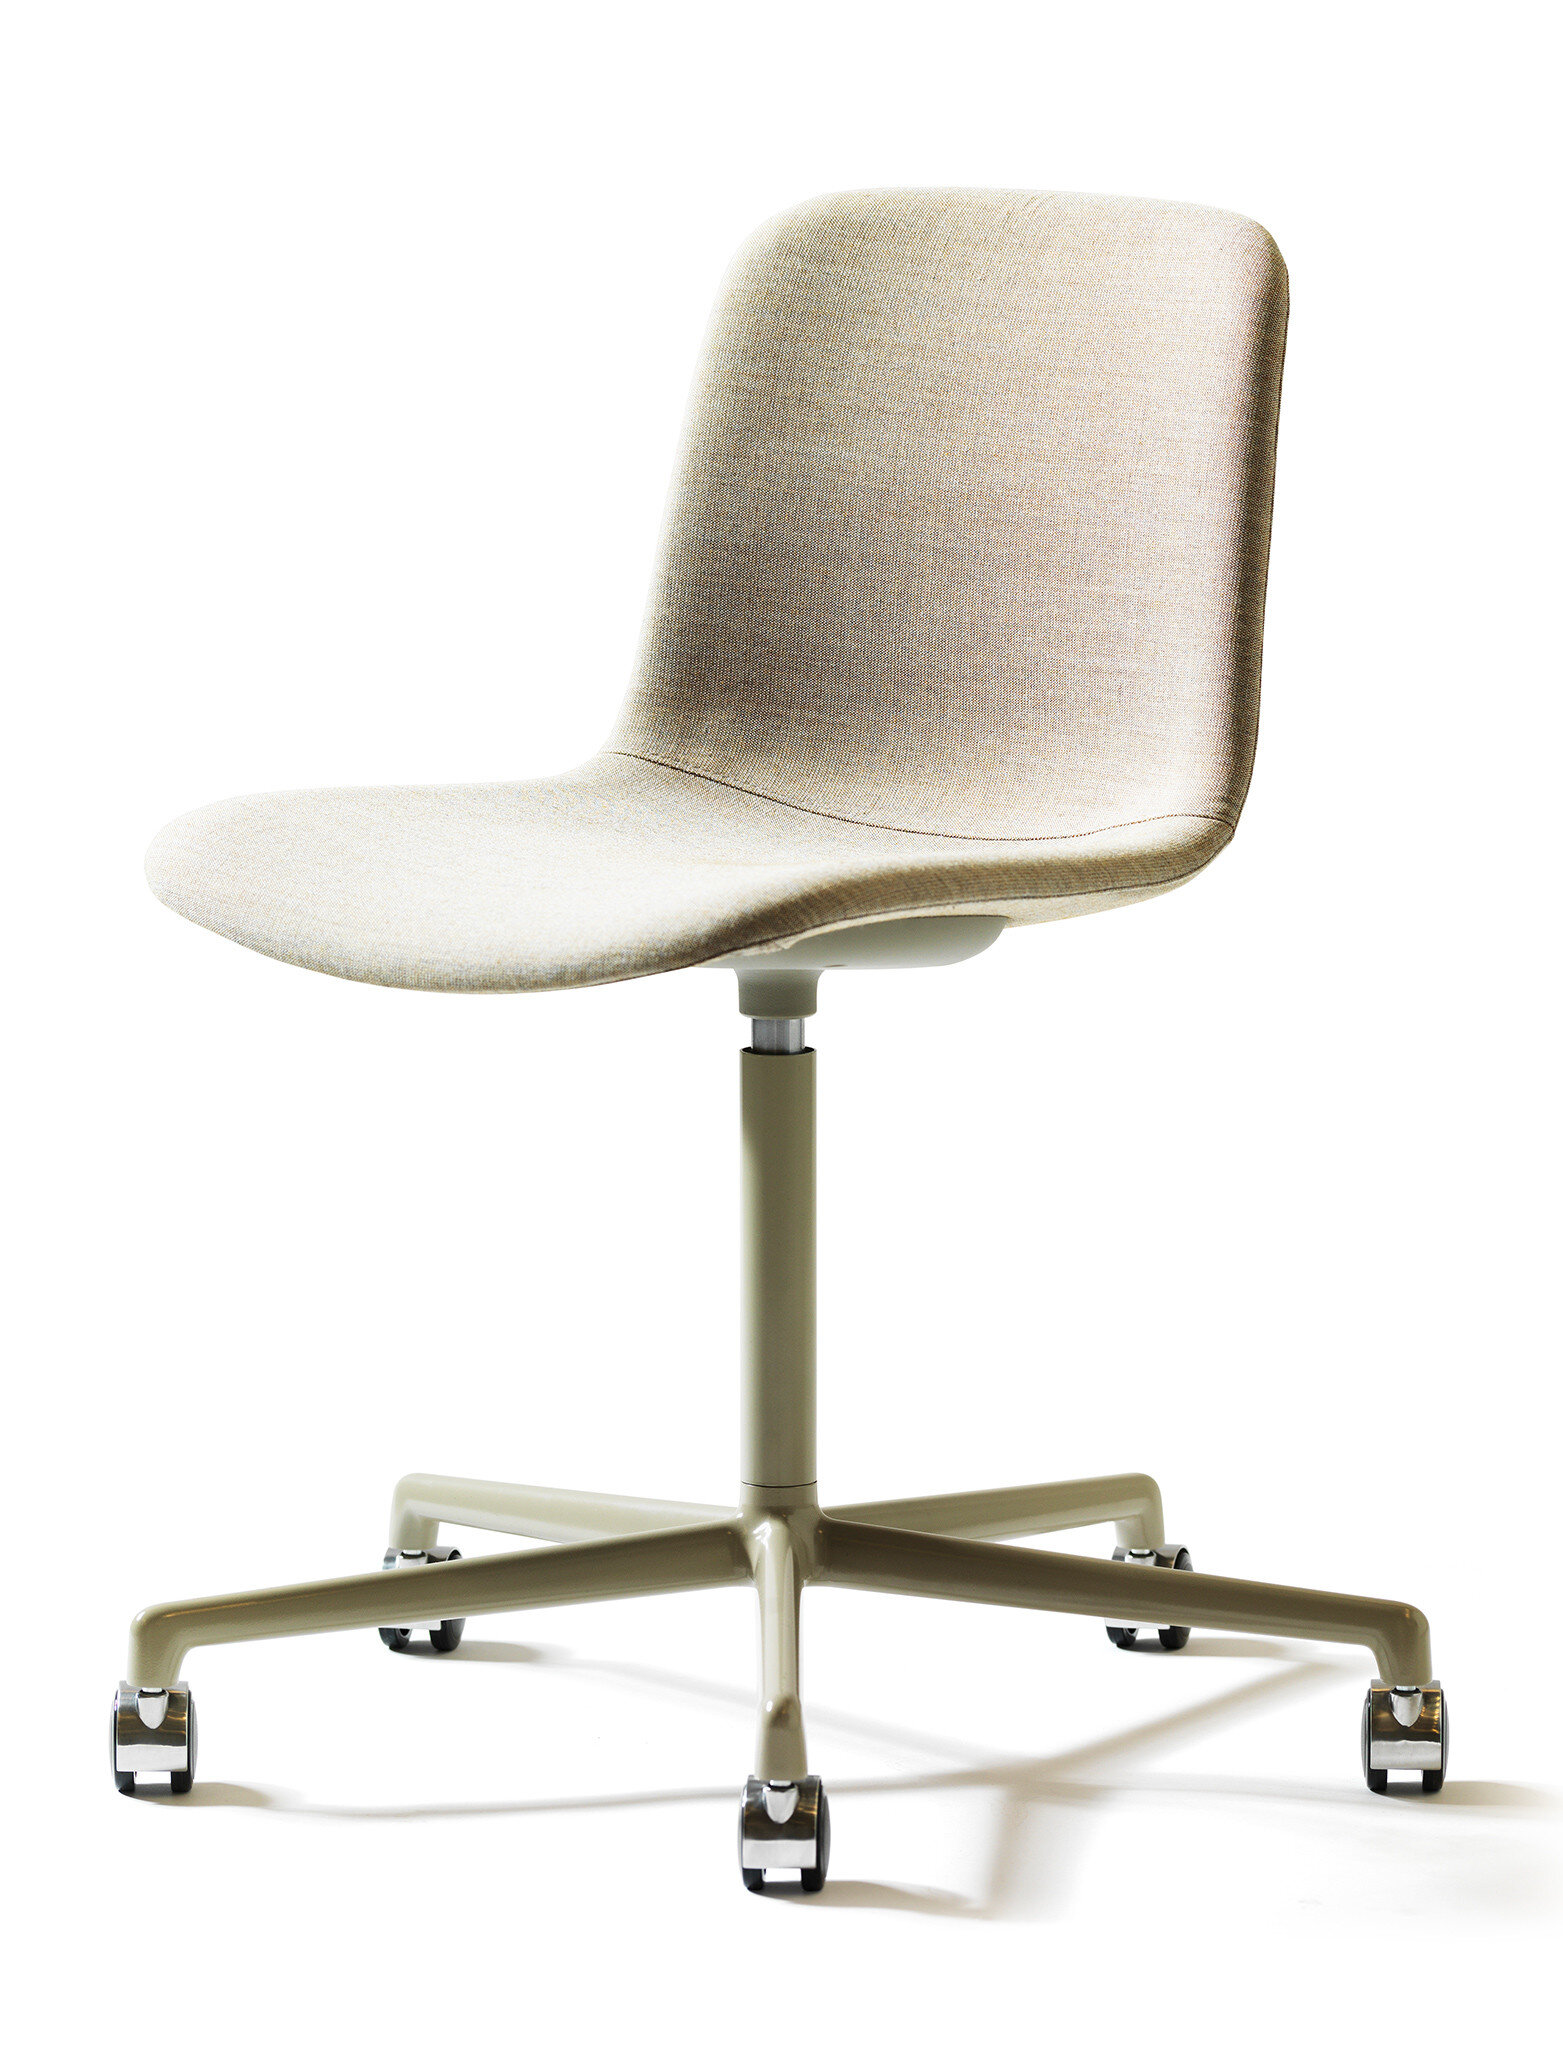 grade-chair-5-feet-swivelbase-1.jpeg